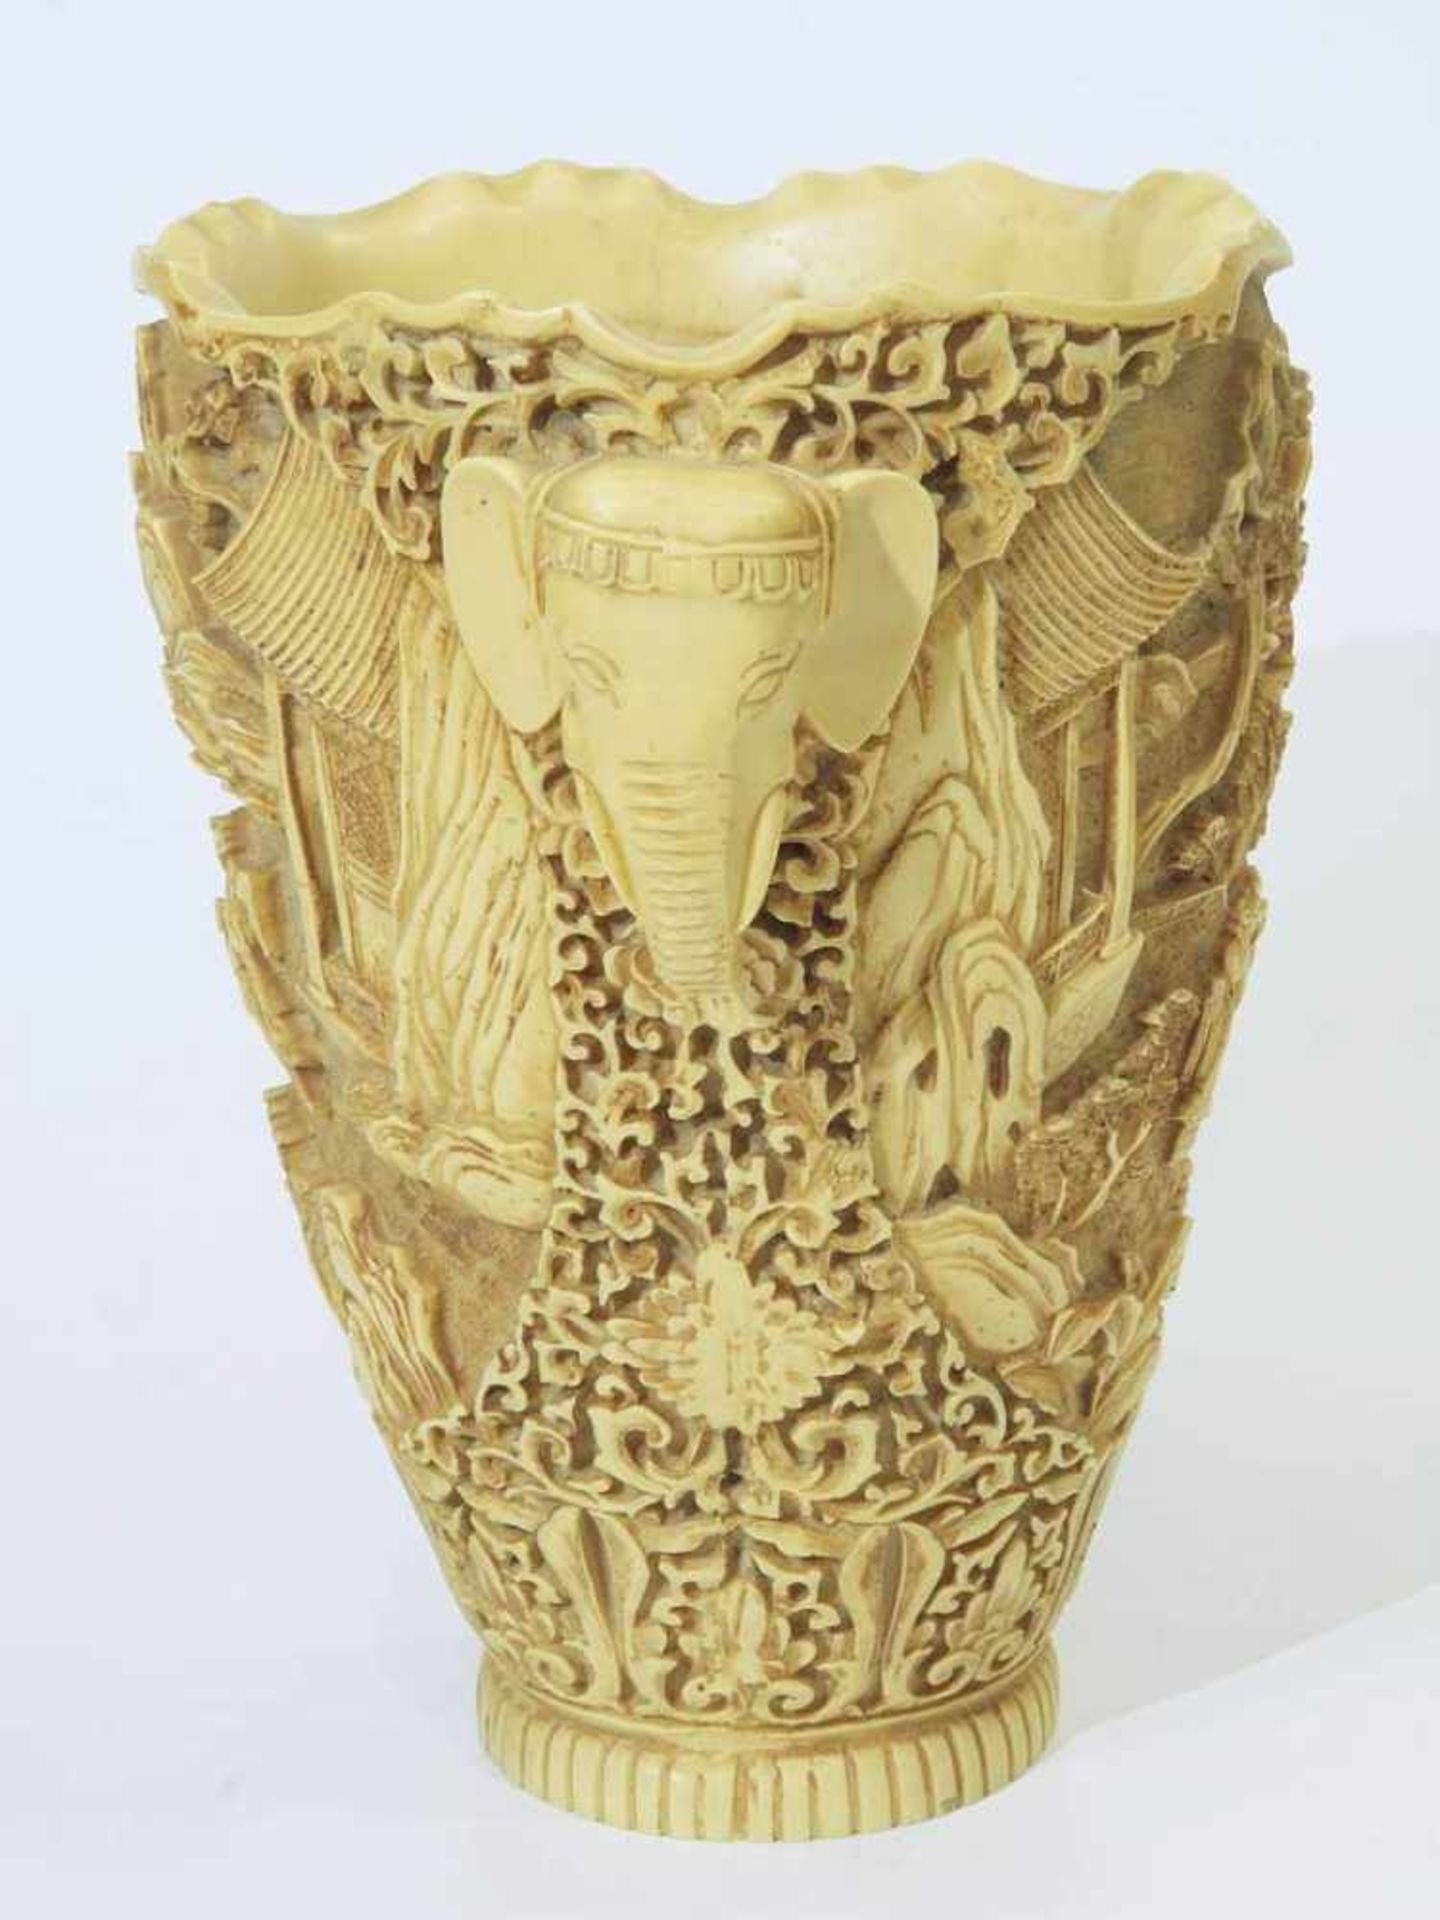 Vase mit Elefantenkopf-Handhaben. Vase mit Elefantenkopf-Handhaben. Asien, 20. Jahrhundert. - Bild 3 aus 6